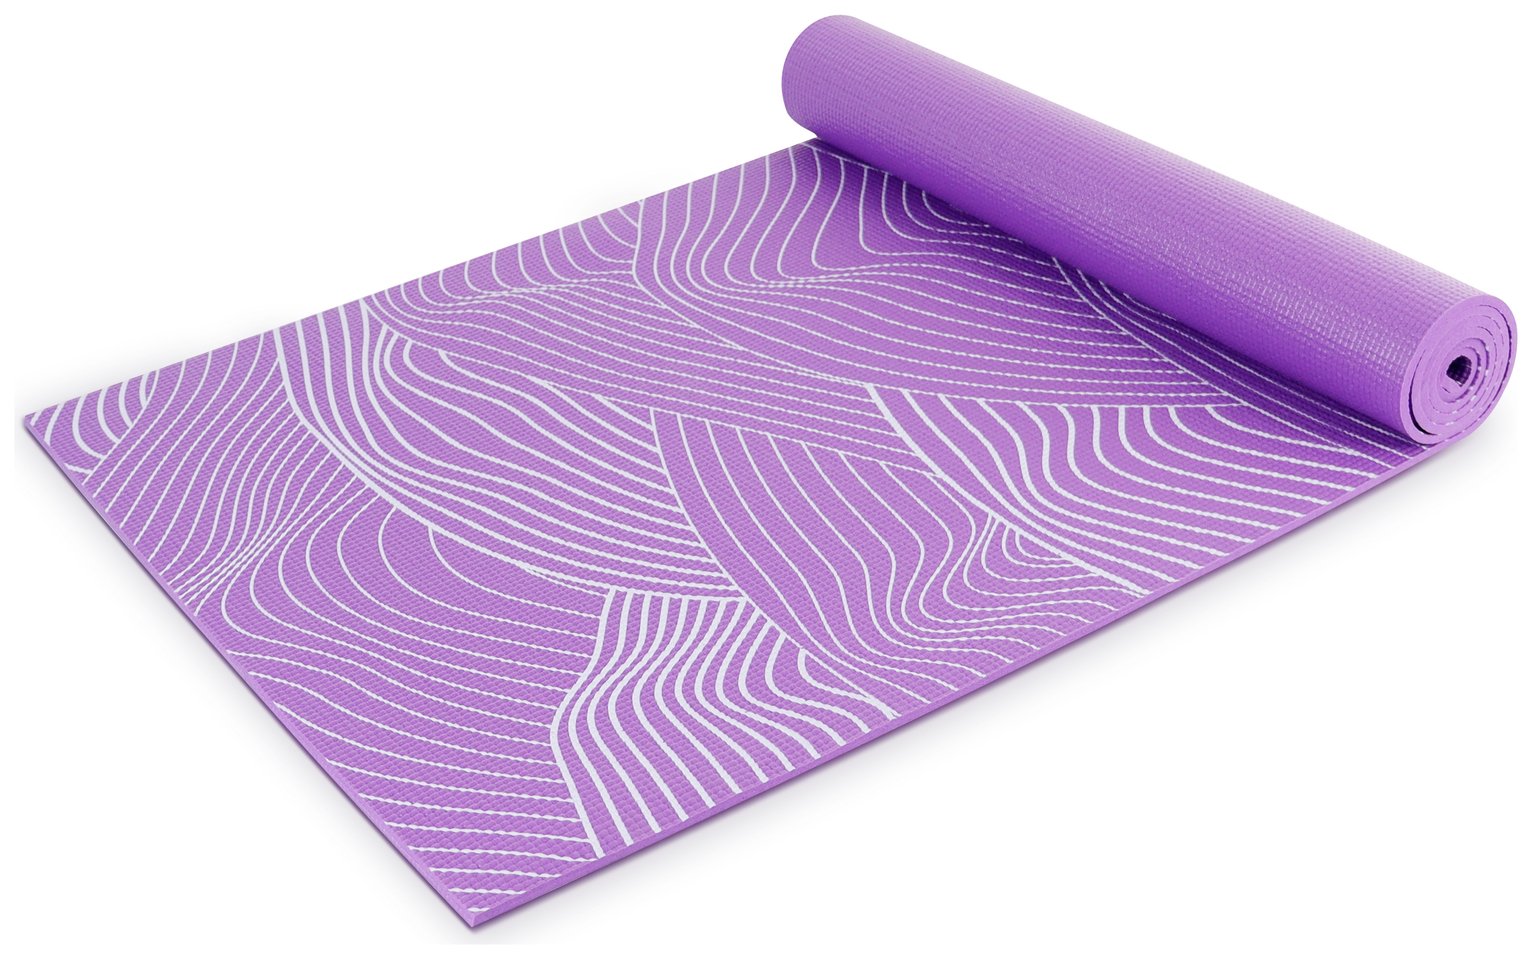 Opti 6mm PVC Yoga Exercise Mat - Purple